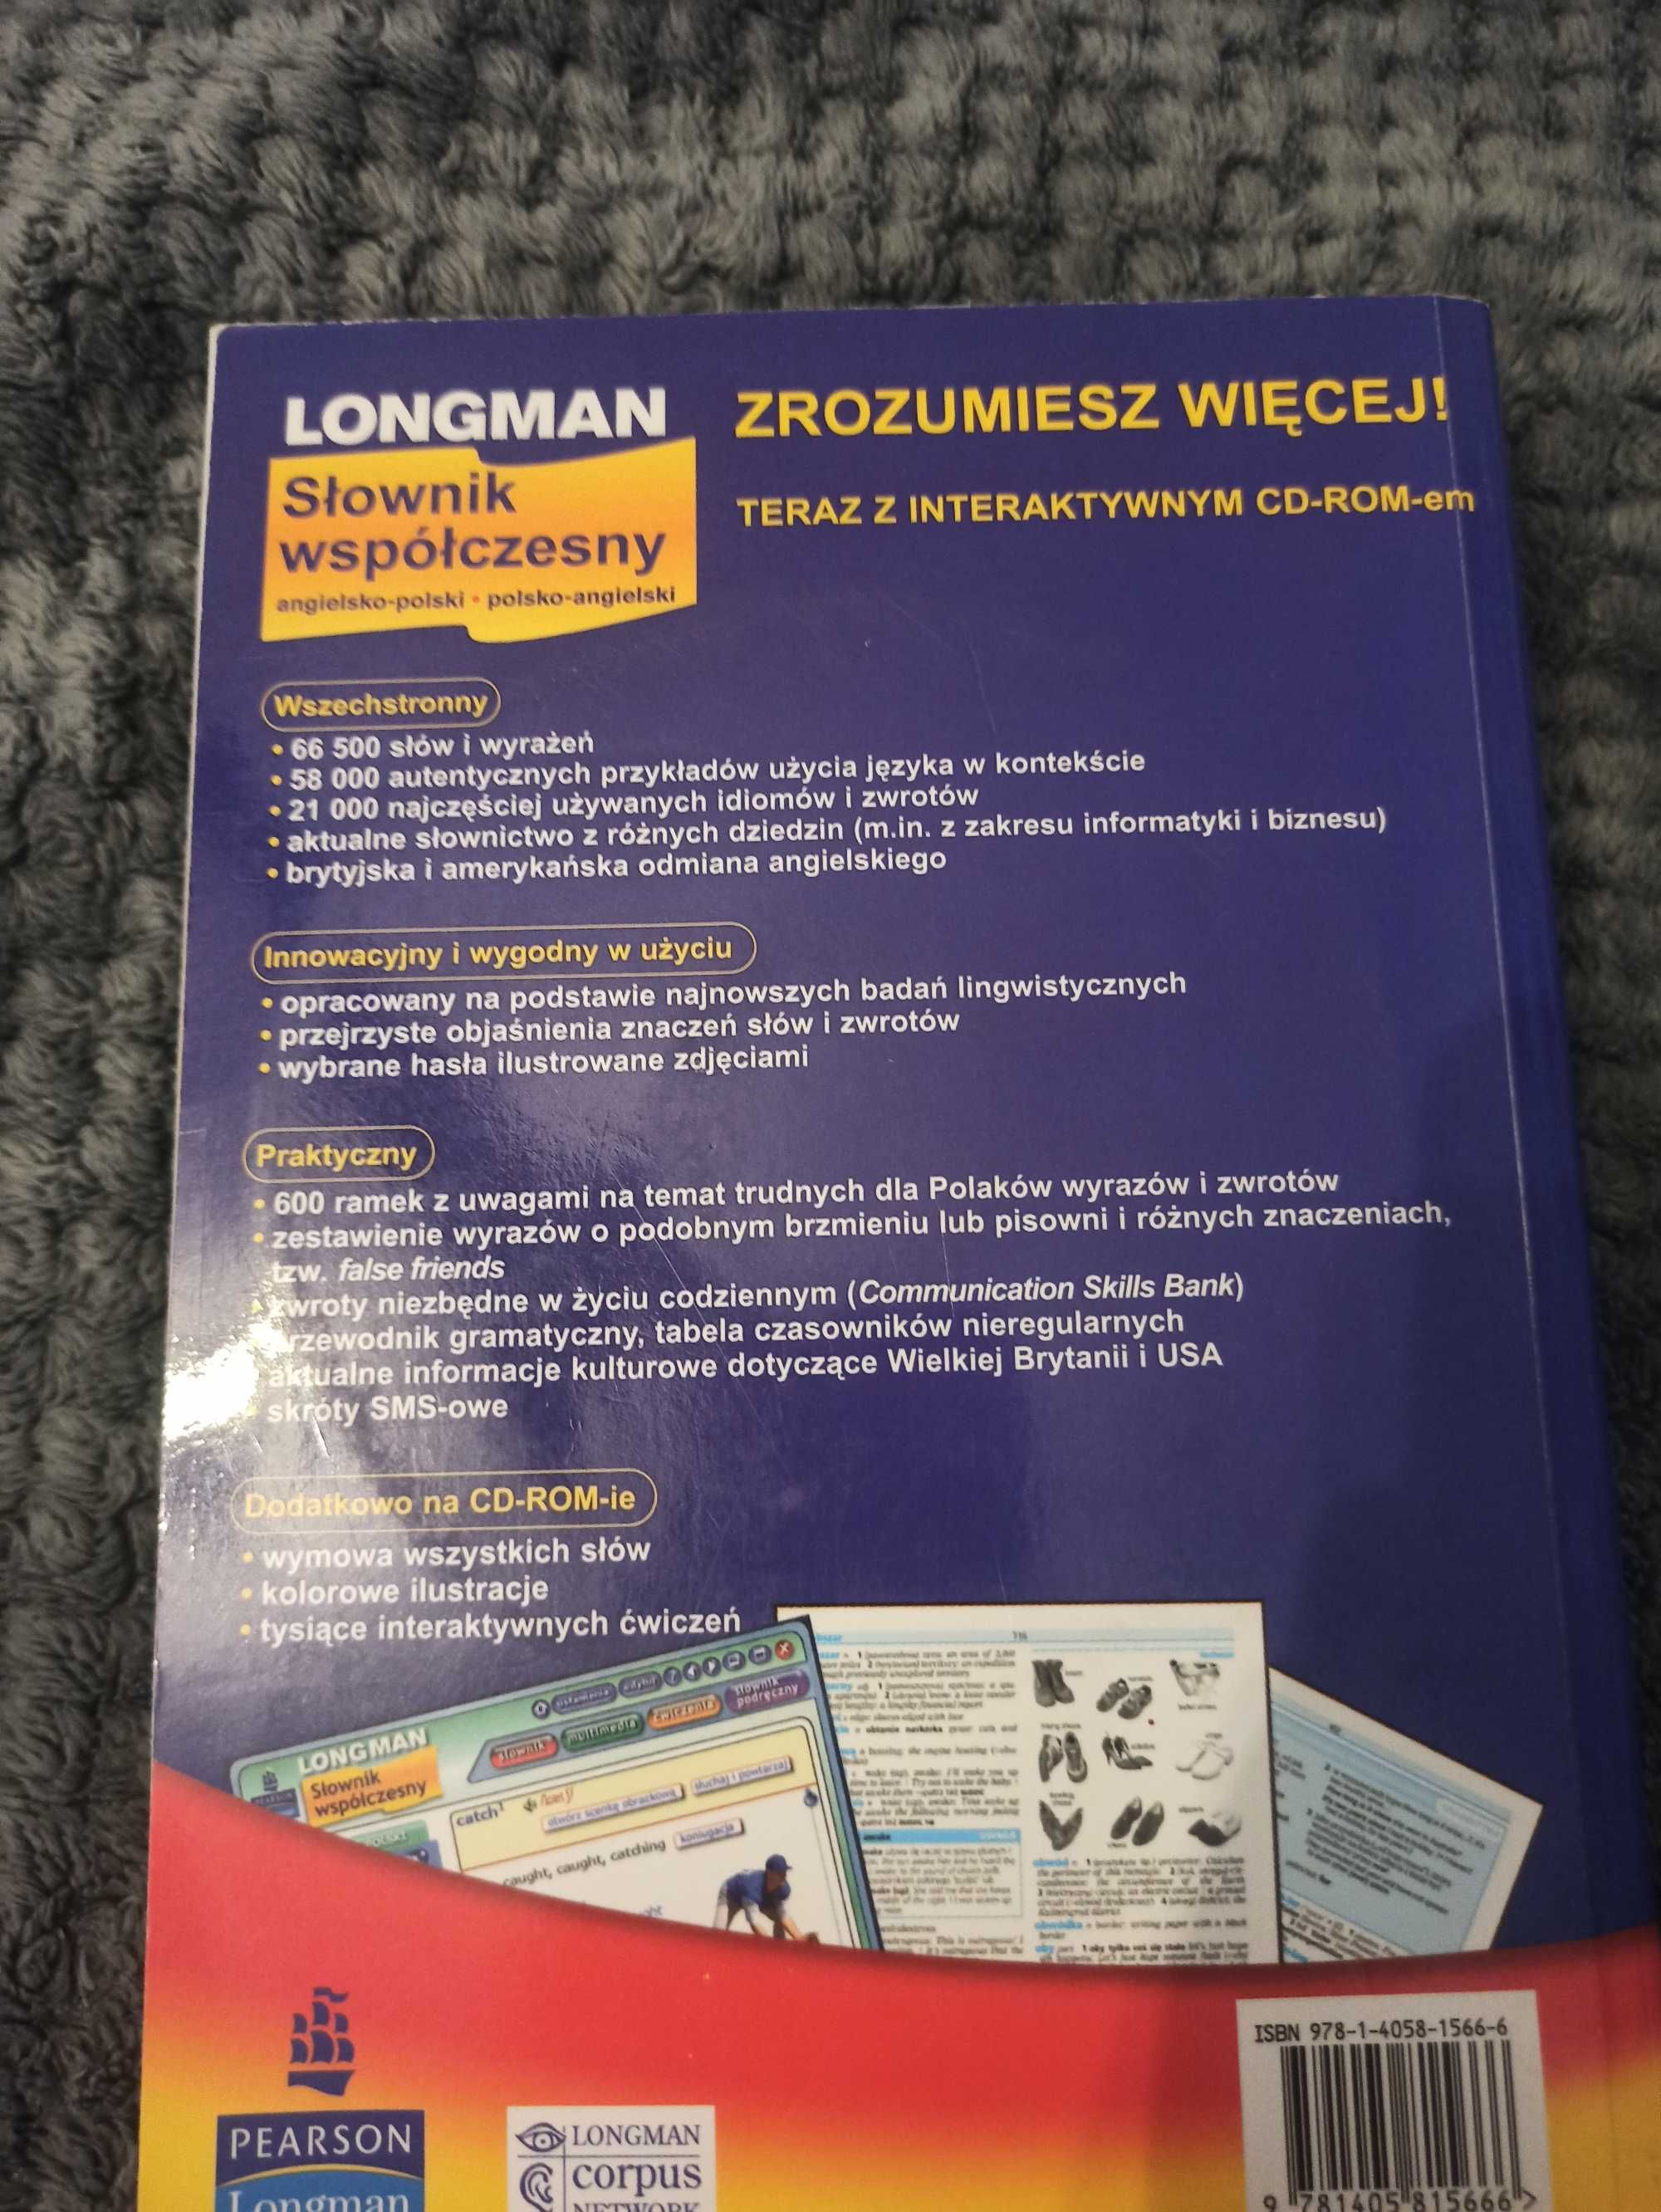 Słownik współczesny Longman angielsko-polski polsko-angielski